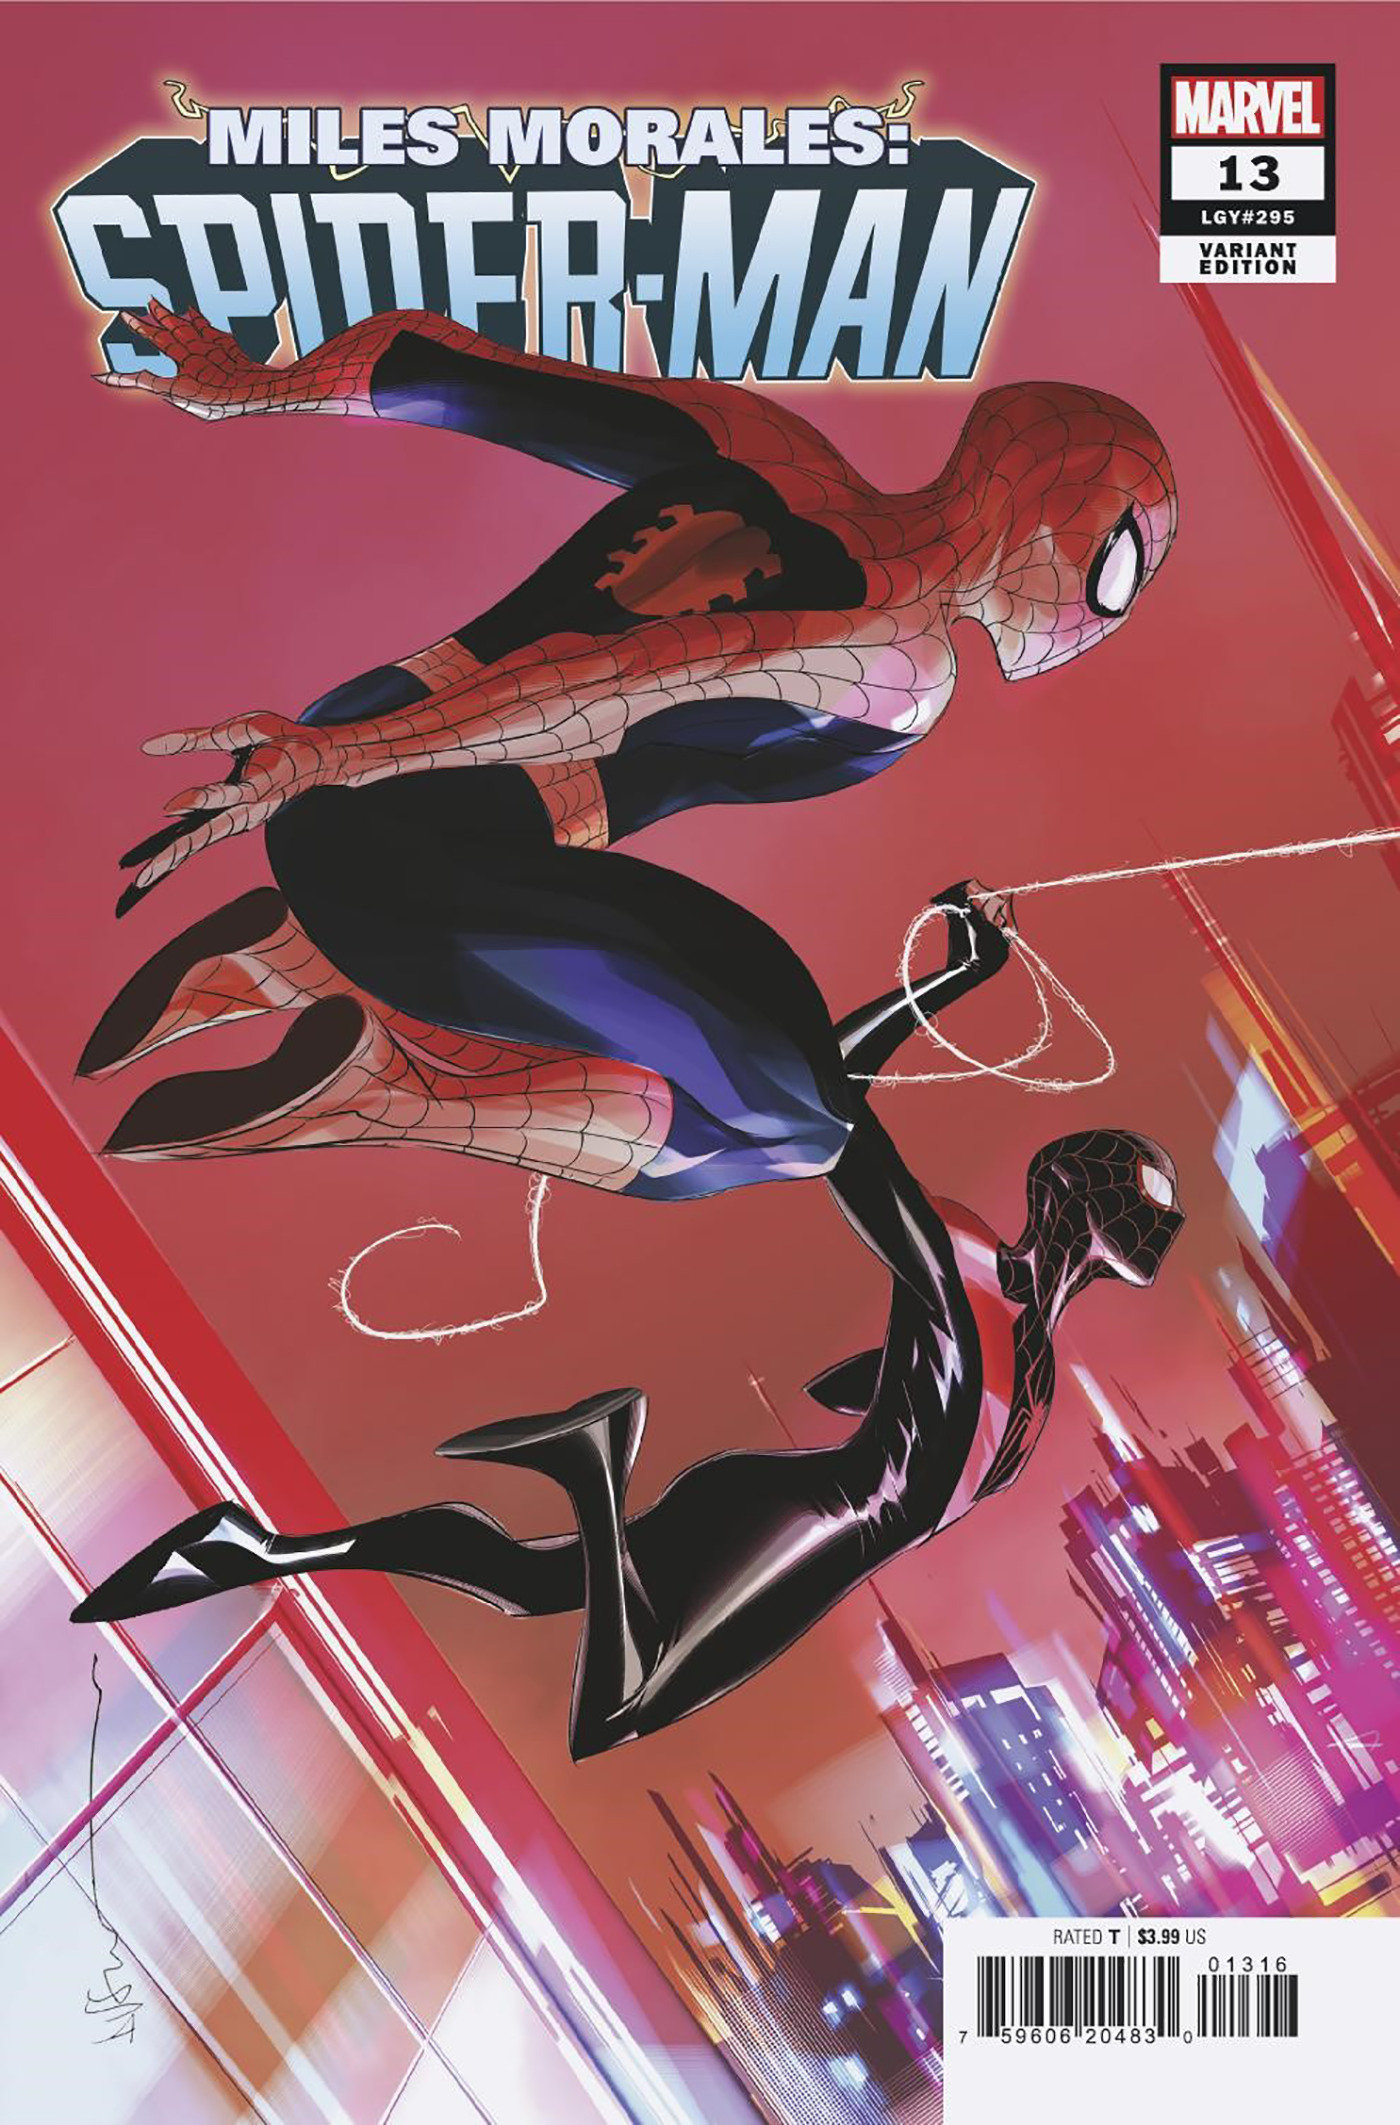 Miles Morales: Spider-Man #13 Dustin Nguyen Variant (Gang War) 1 for 25 Incentive